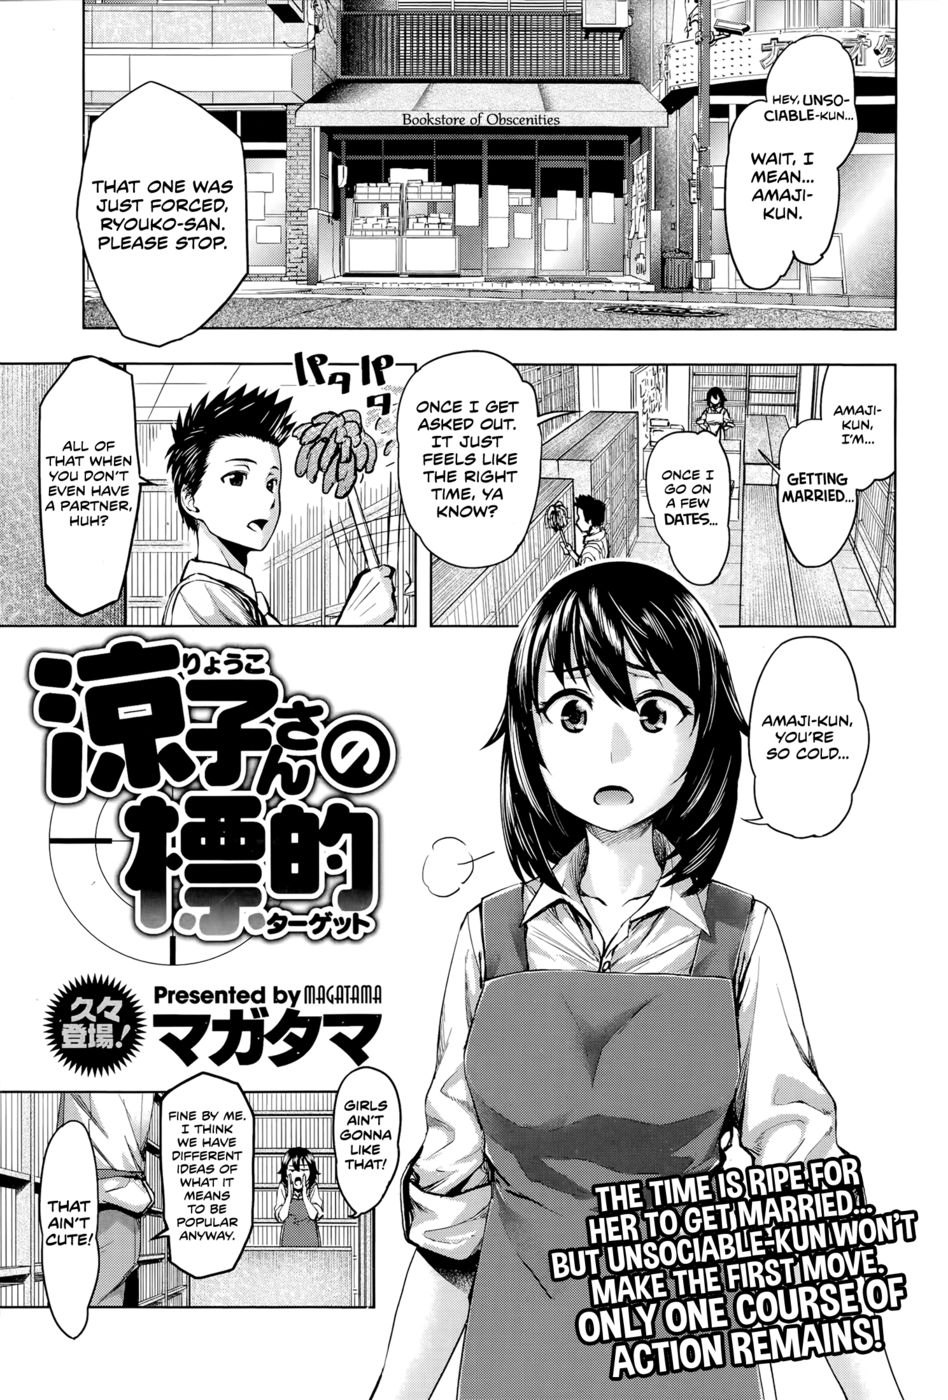 Hentai Manga Comic-Ryouko-san's Target-Read-1